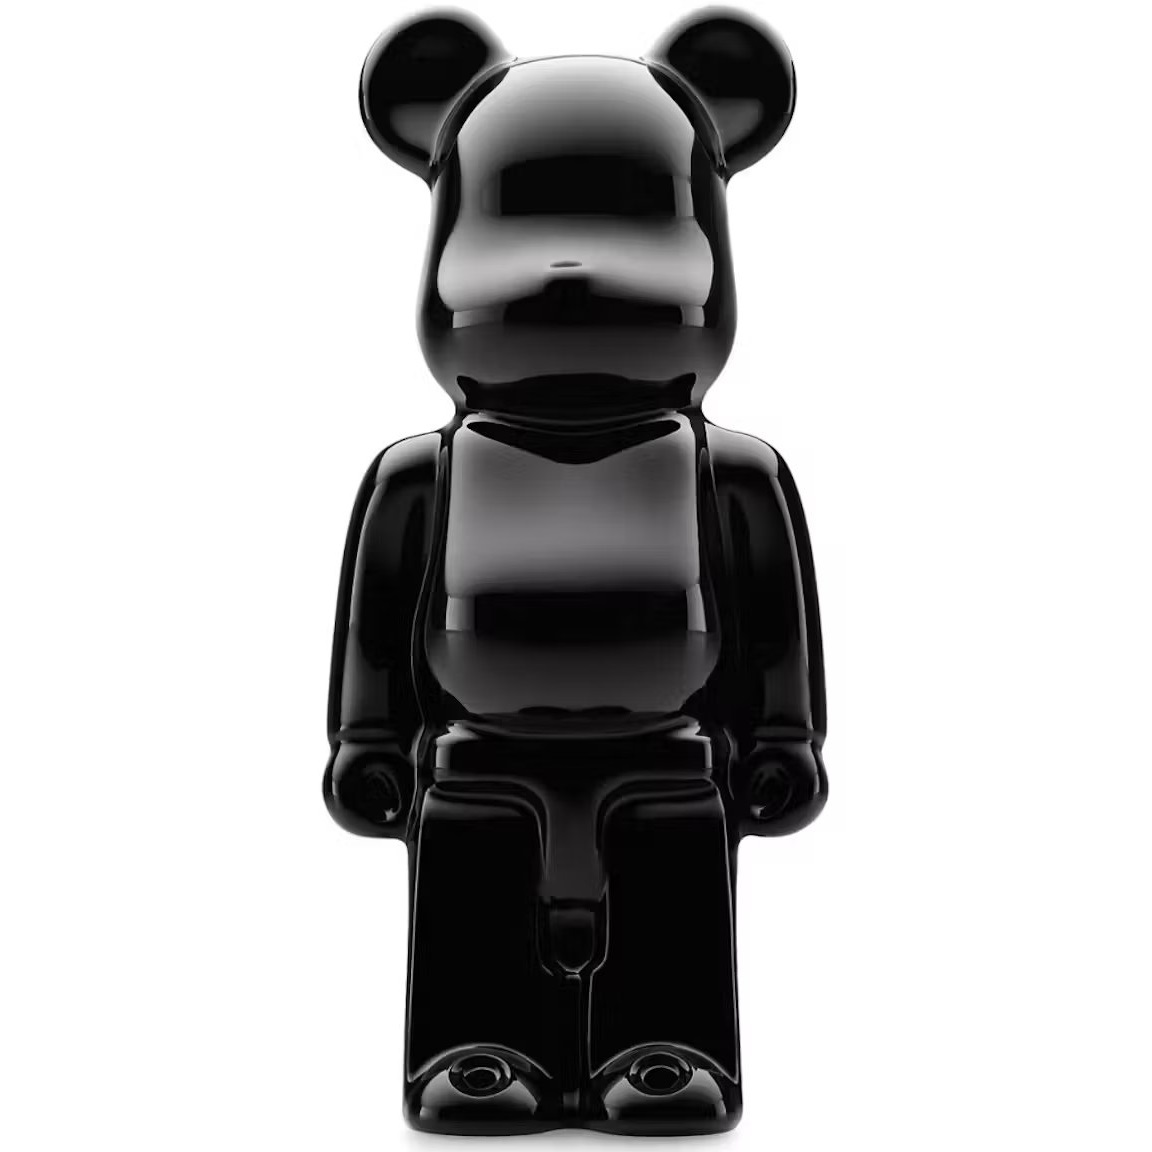 Фигурка Bearbrick x Baccarat Bear Sculpture, черный игрушка распылитель воды в стиле запястья крутой водяной пистолет игрушка имитация супергероя новая игрушка для пляжа бассейна вечеринки